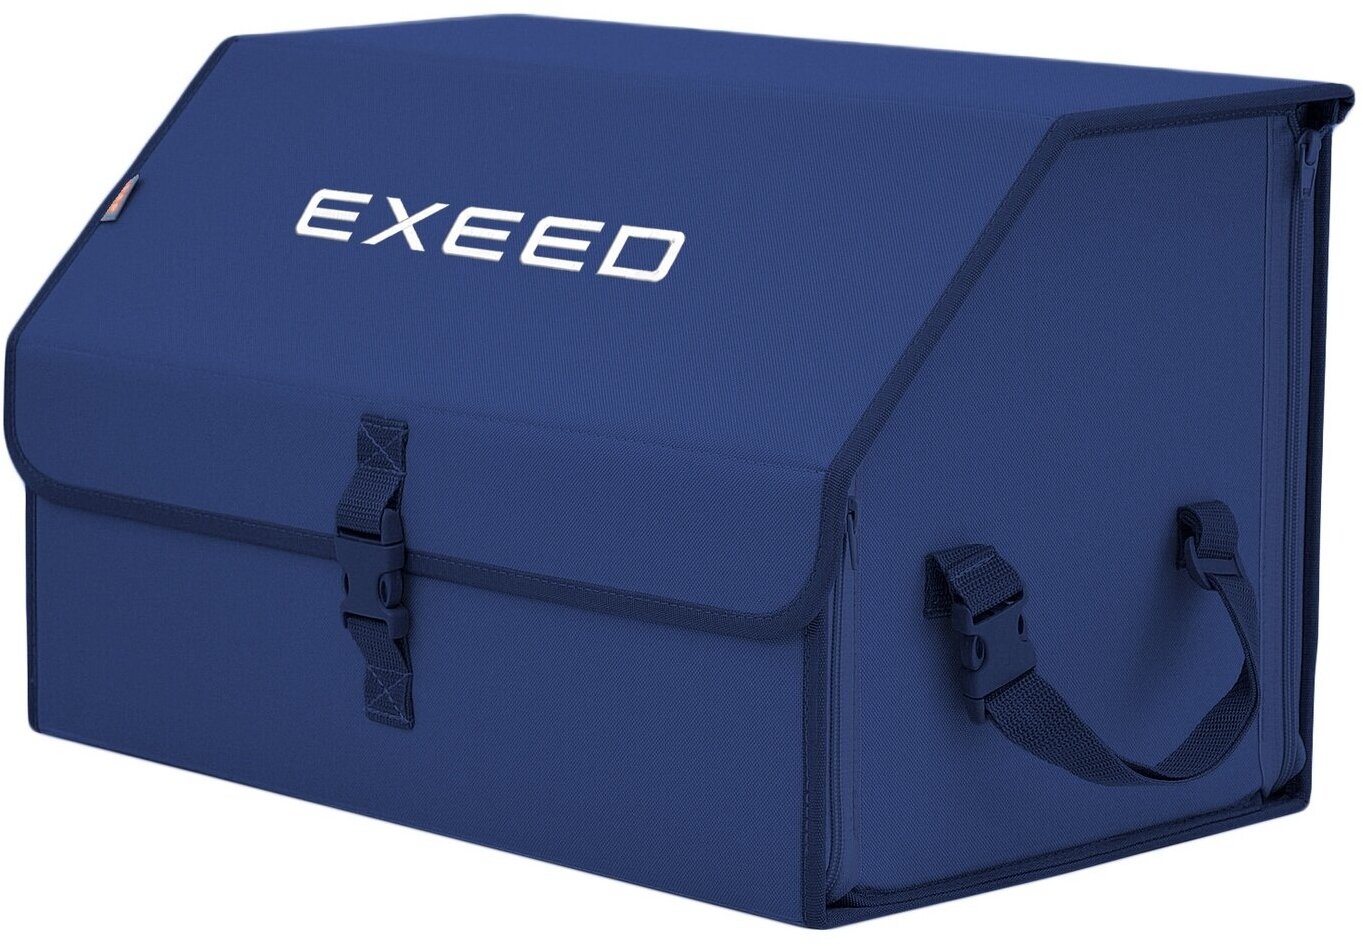 Органайзер-саквояж в багажник "Союз" (размер L). Цвет: синий с вышивкой Exeed (Эксид).